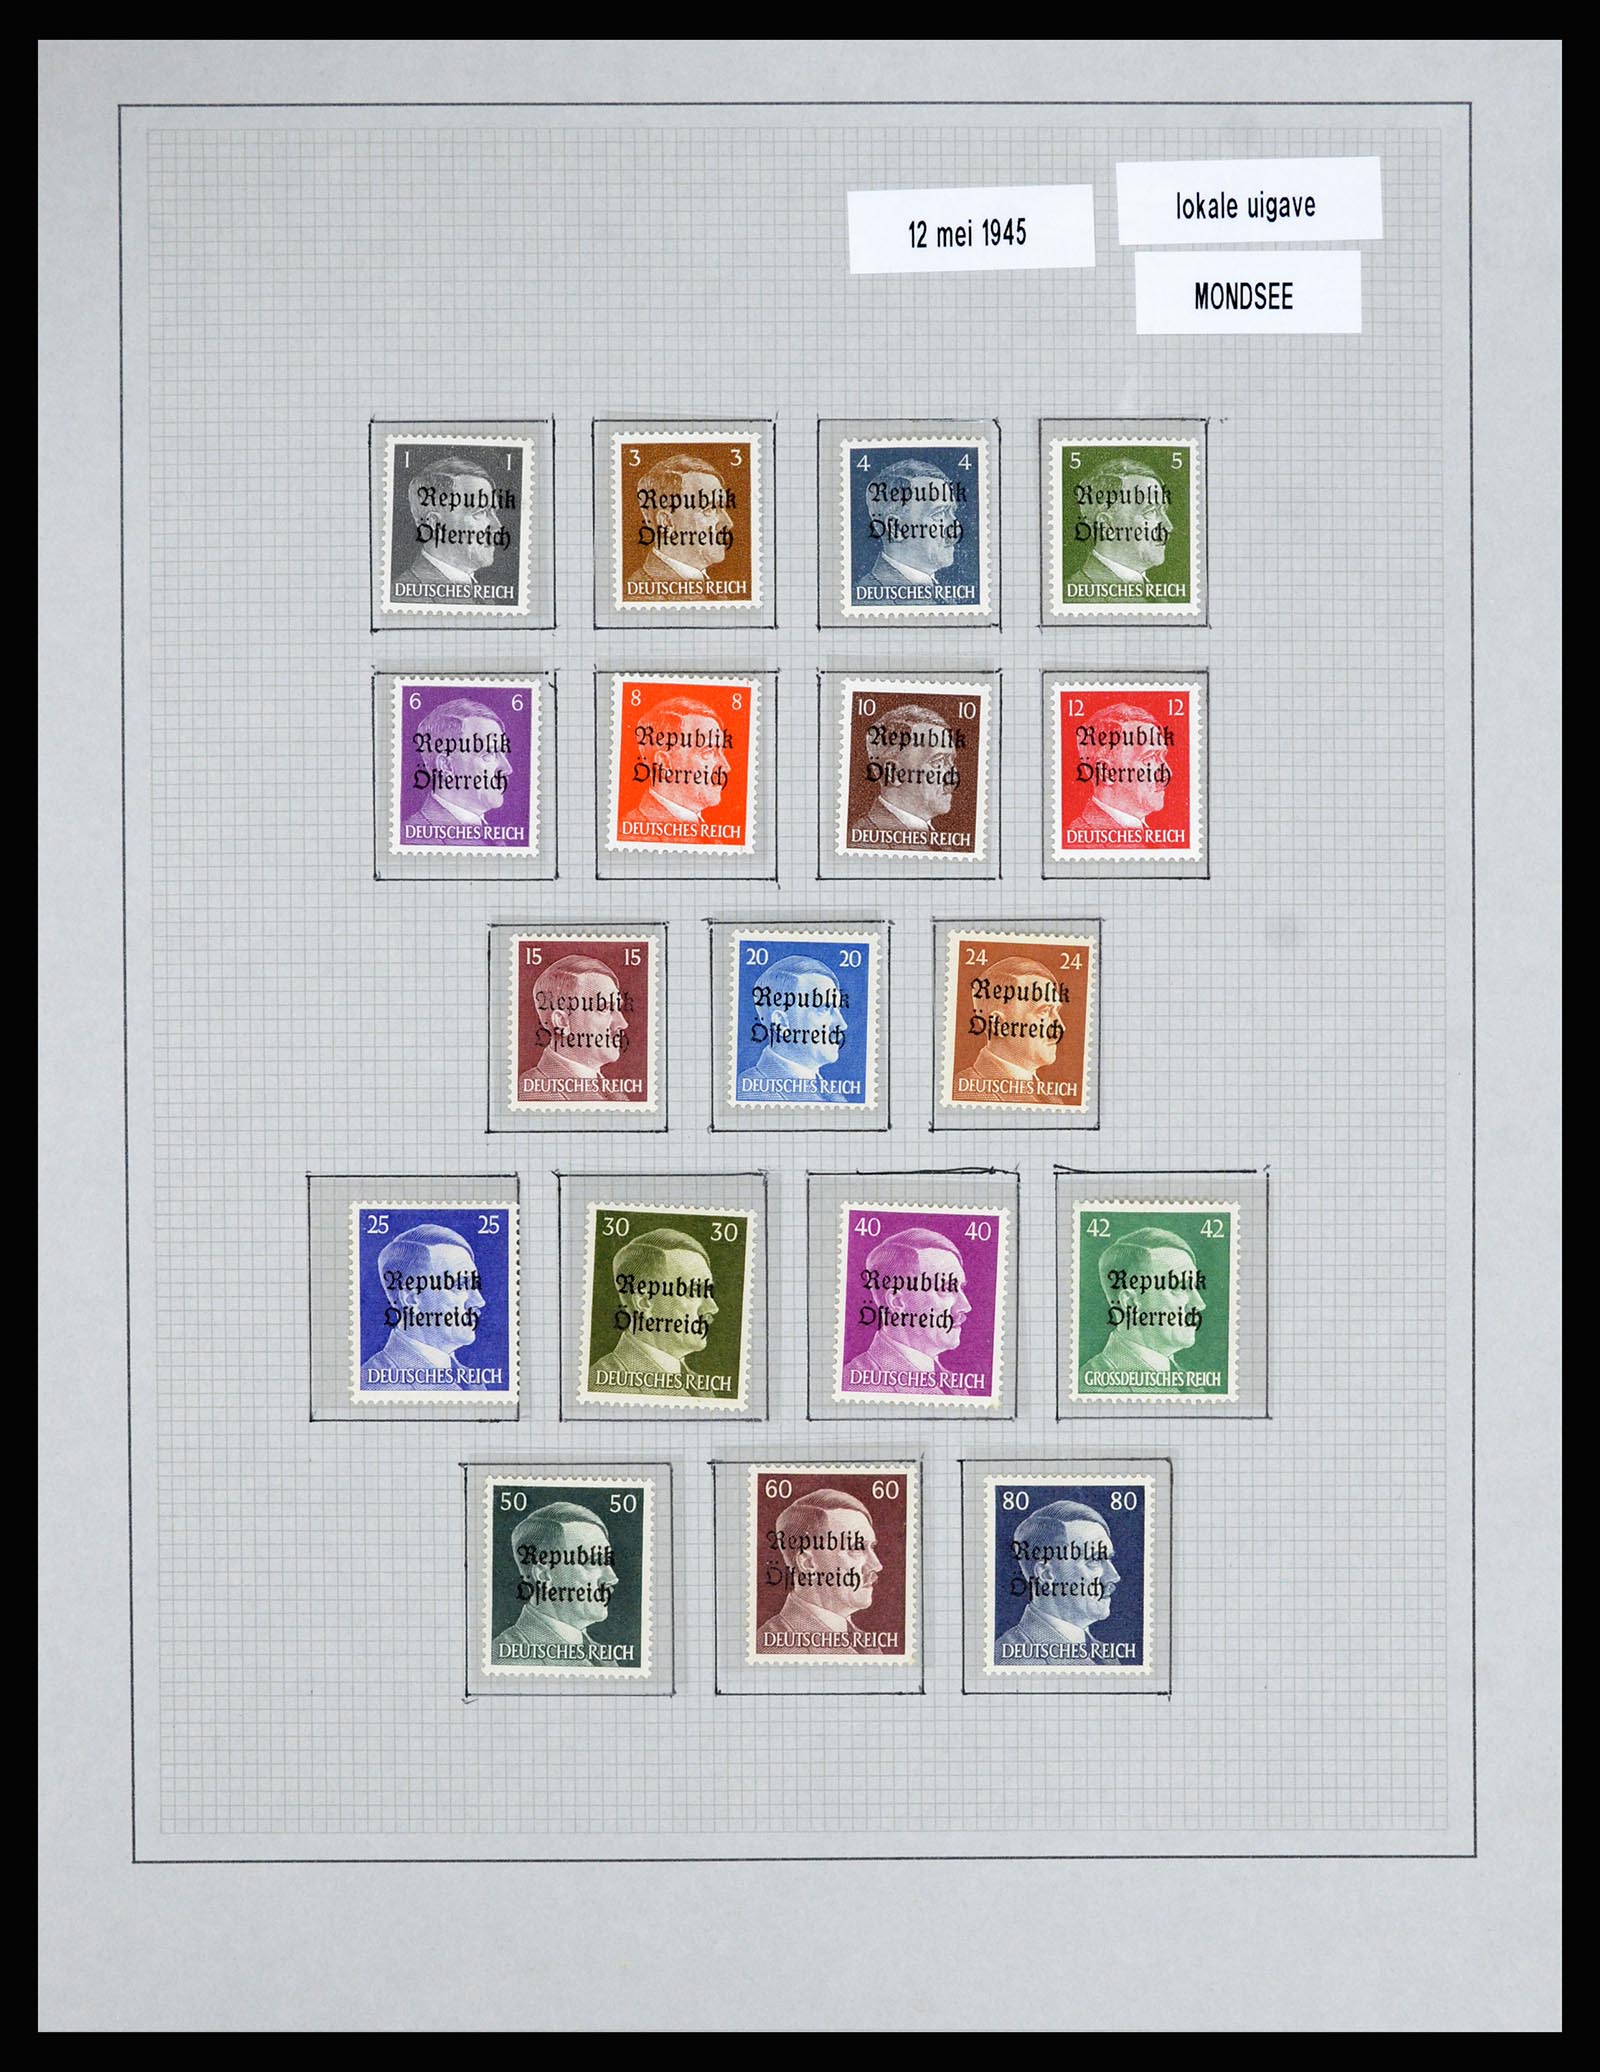 36820 019 - Postzegelverzameling 36820 Oostenrijk lokaaluitgaven 1945.